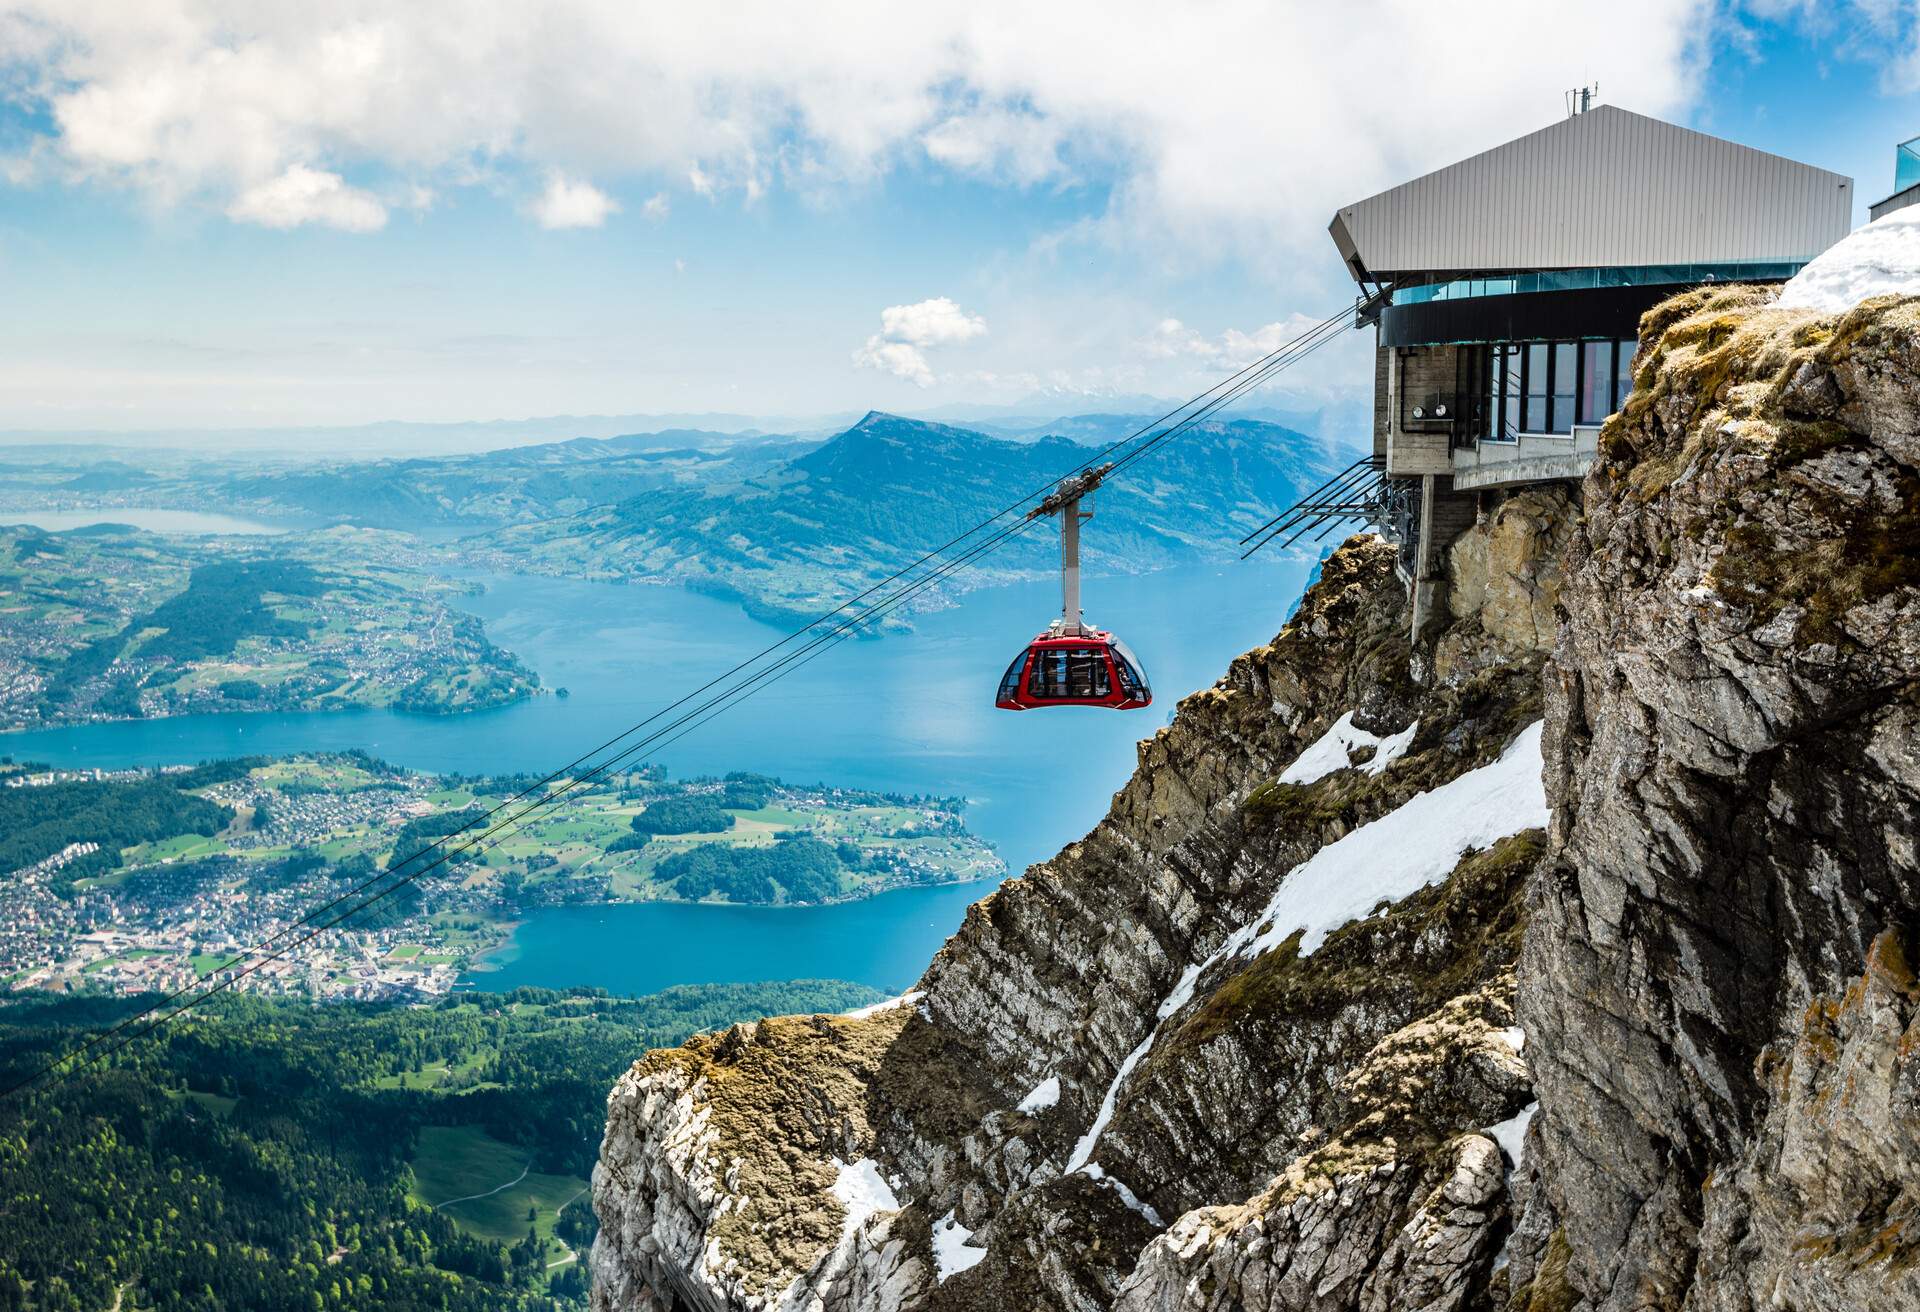 Pilatus Kulm und Seilbahn, Gipfel über dem Vierwaldstättersee, Schweiz, Europa